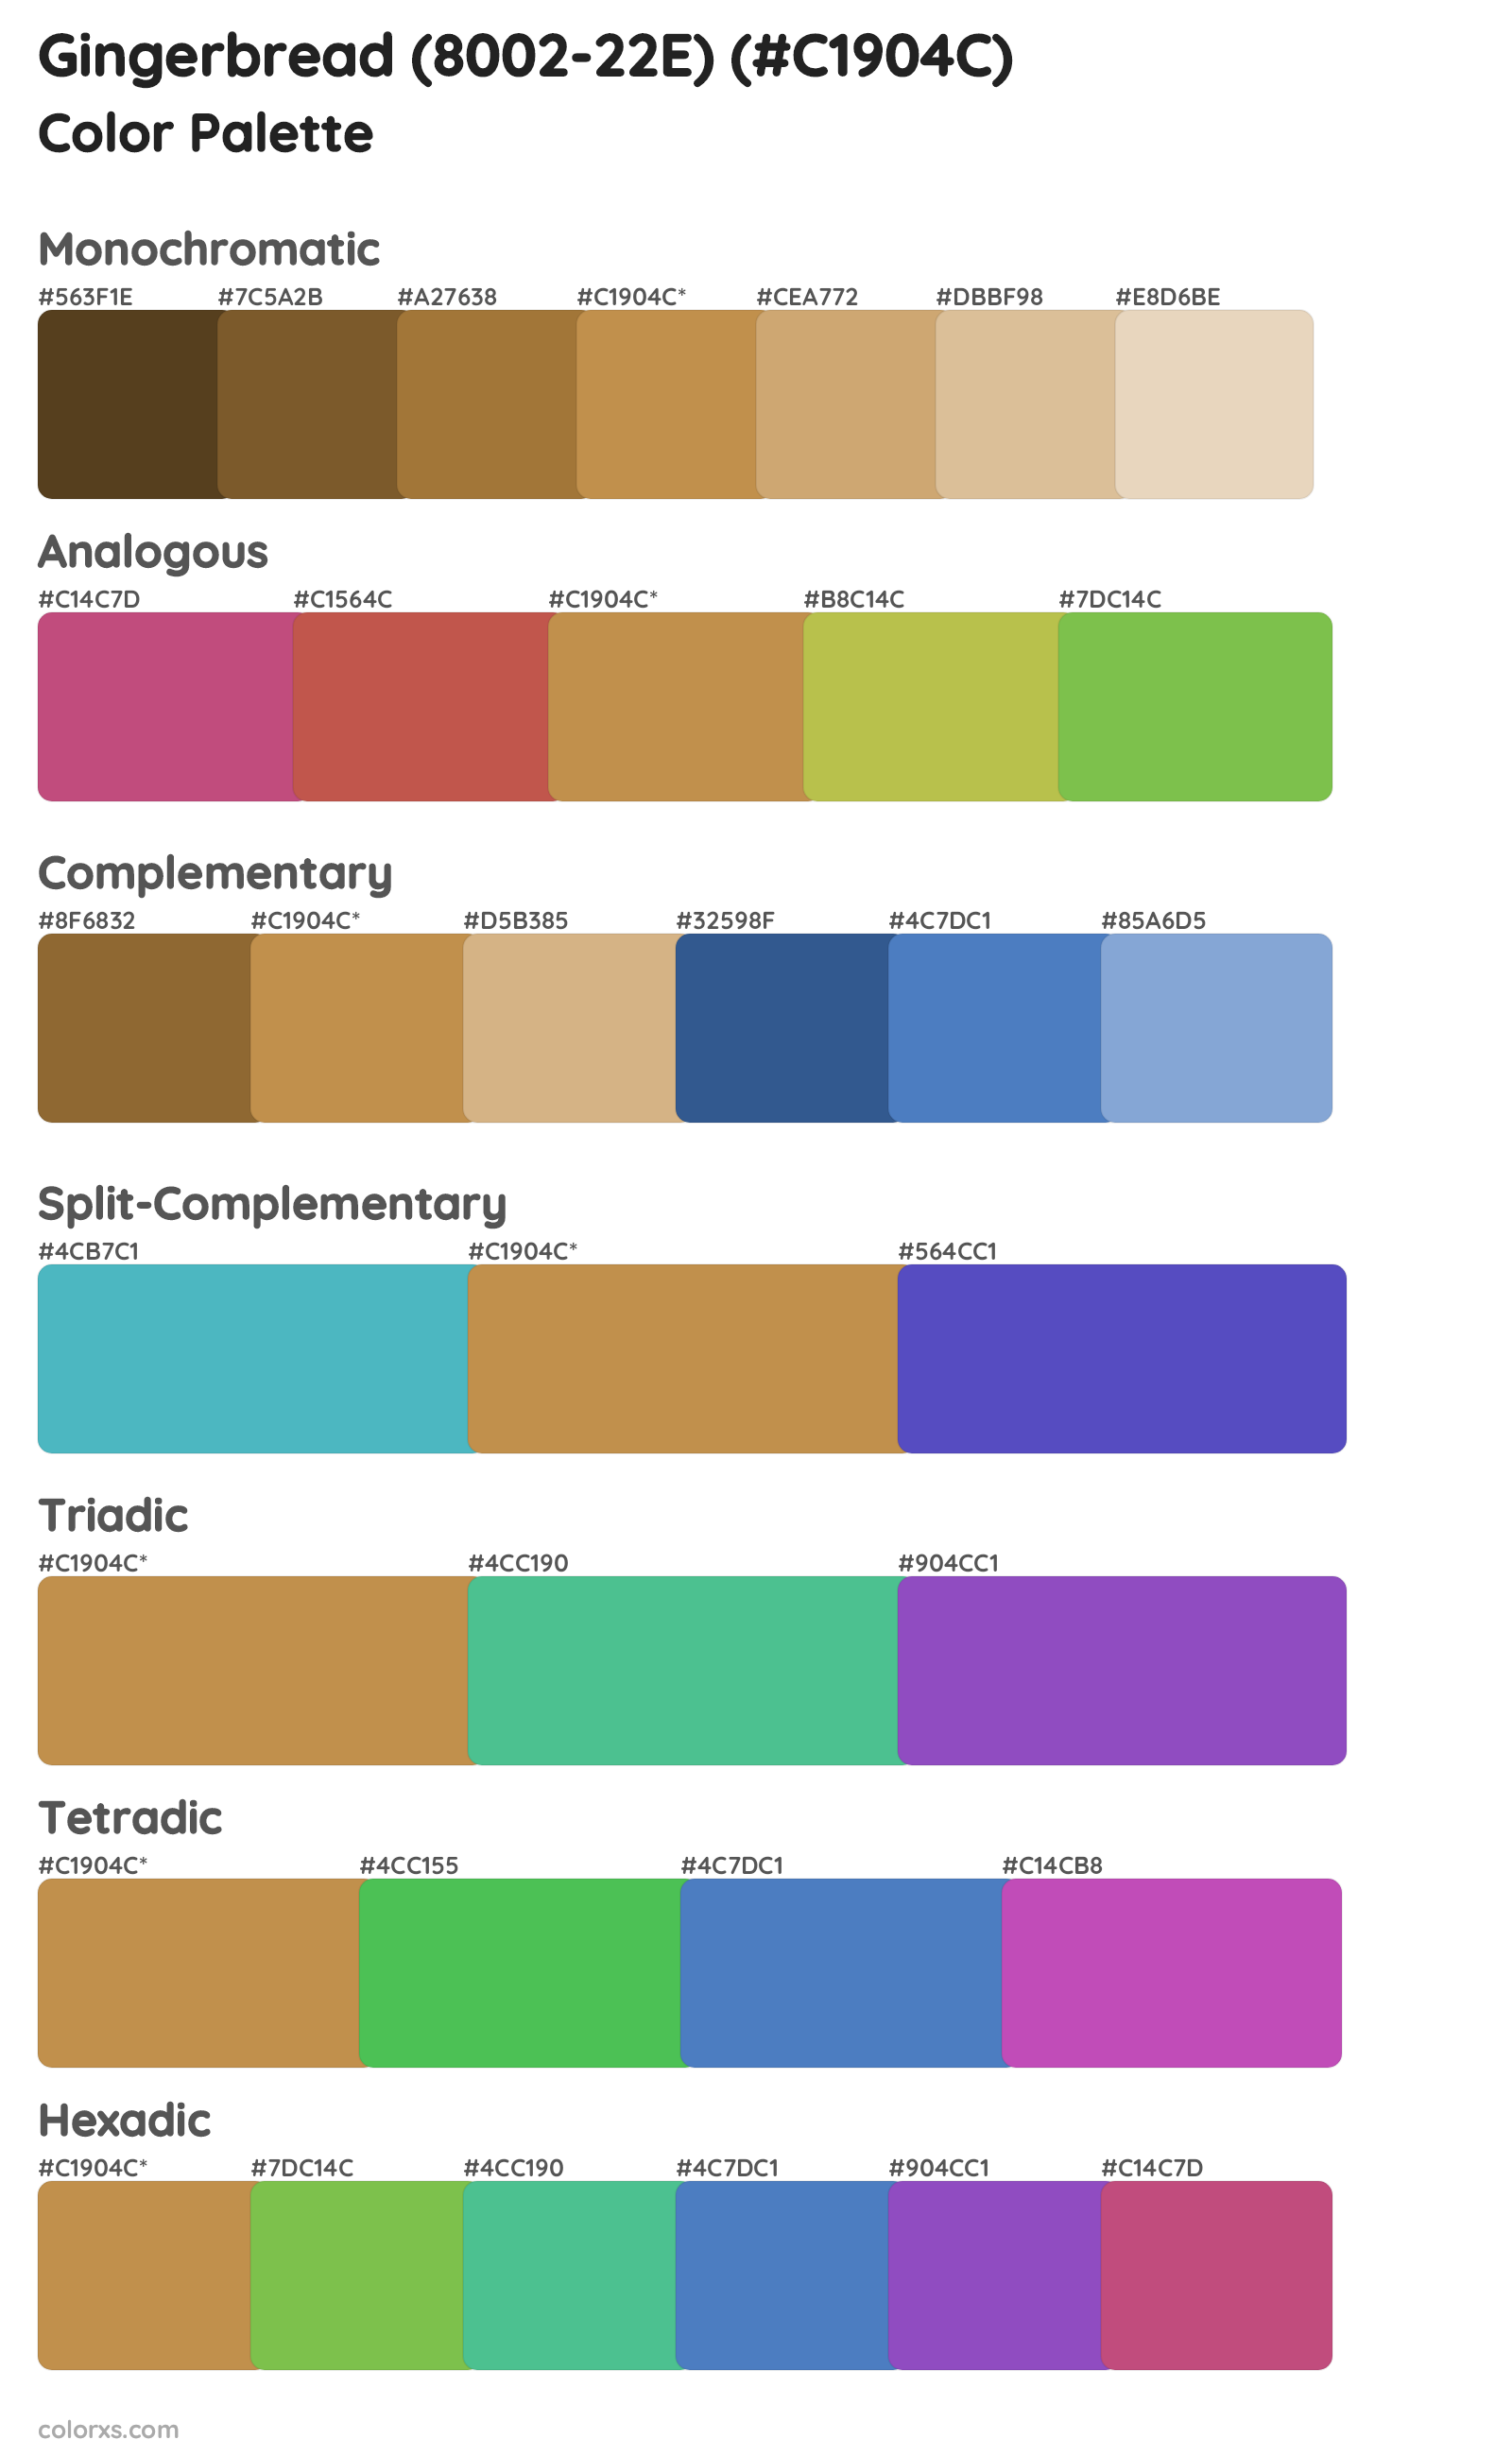 Gingerbread (8002-22E) Color Scheme Palettes